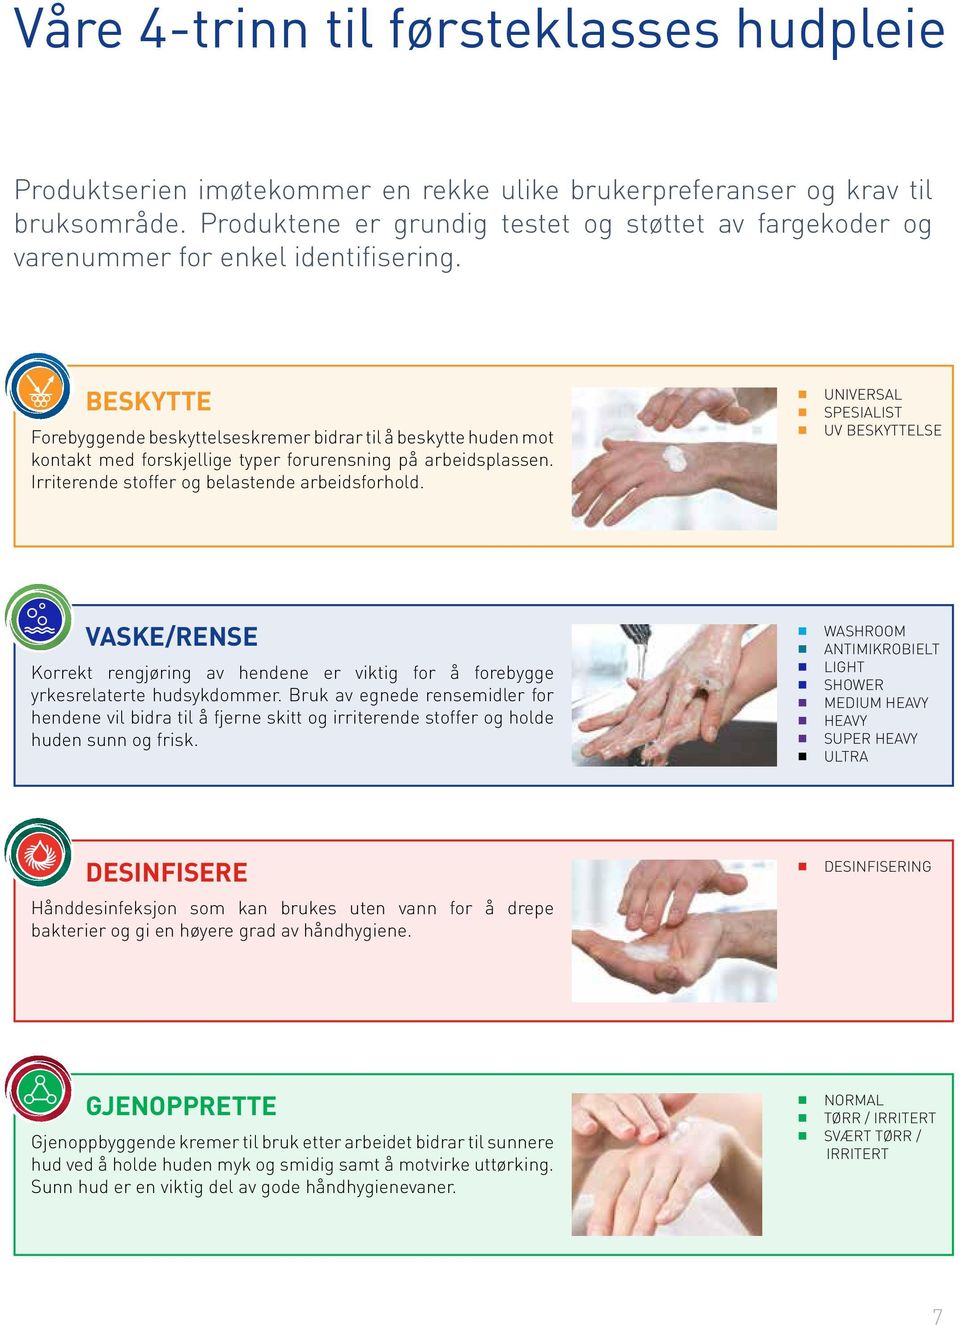 BESKYTTE Forebyggende beskyttelseskremer bidrar til å beskytte huden mot kontakt med forskjellige typer forurensning på arbeidsplassen. Irriterende stoffer og belastende arbeidsforhold.